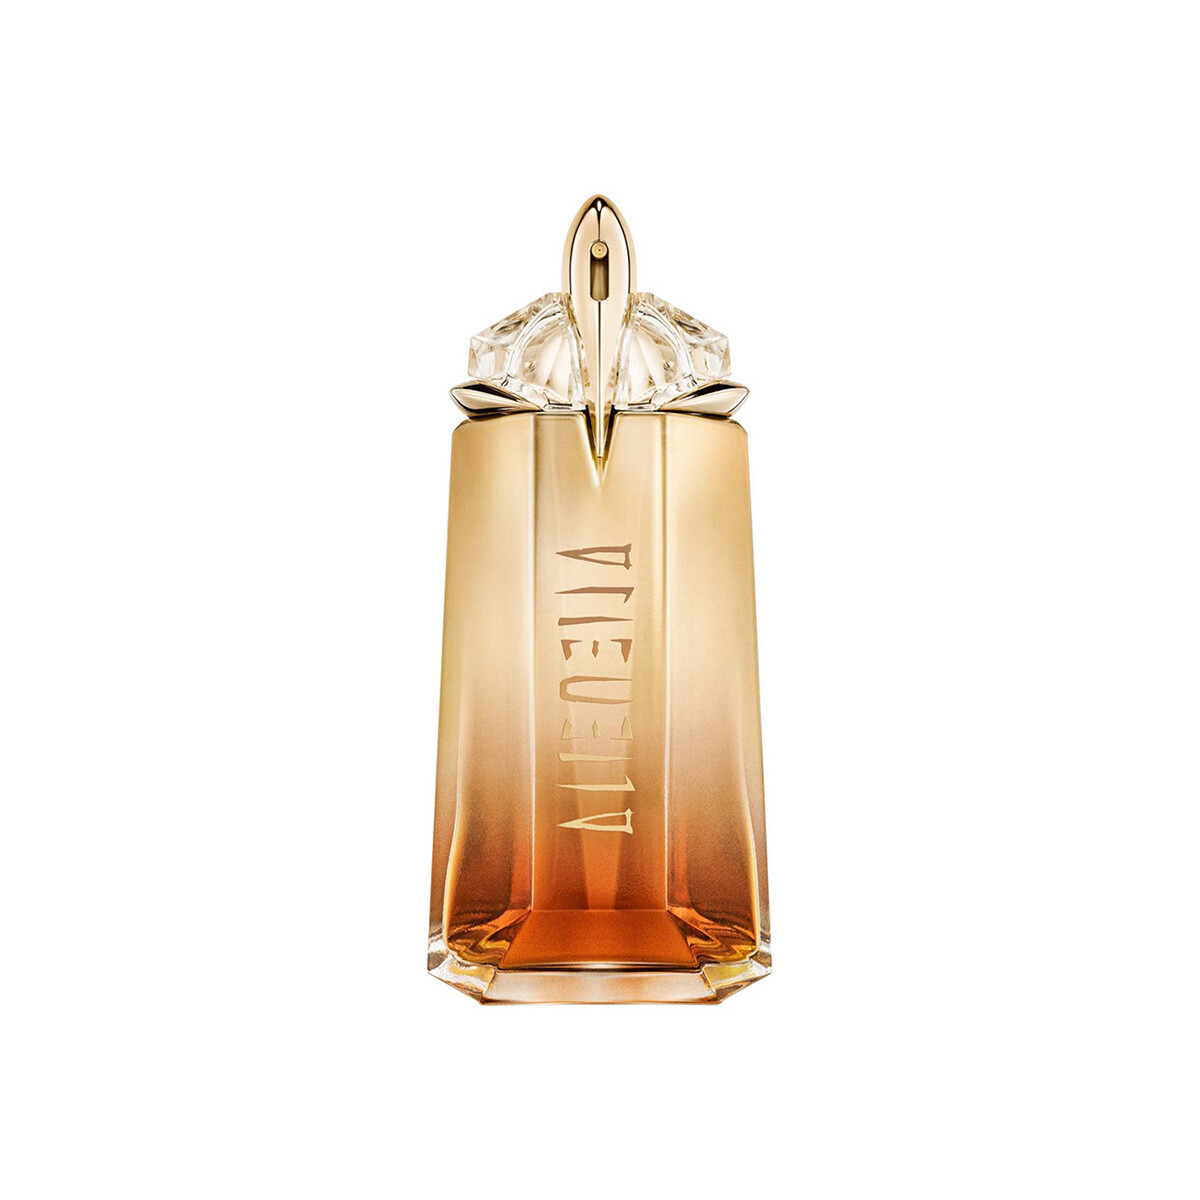 Beauté Femme Eau de parfum Thierry Mugler Alien Goddess - eau de parfum Intense - 90ml Alien Goddess - perfume Intense - 90ml